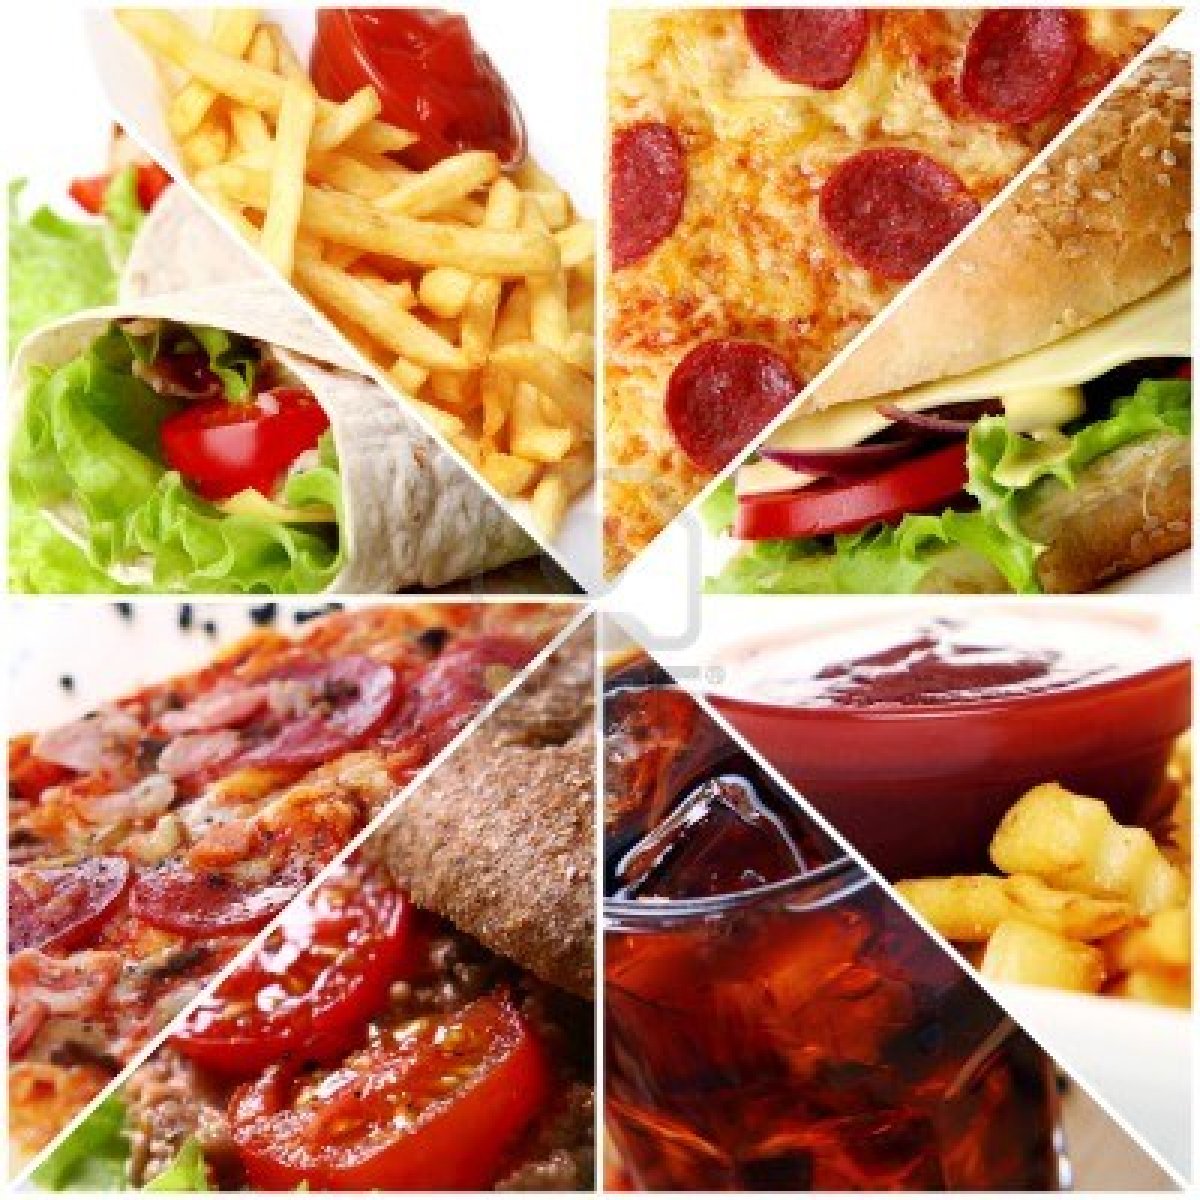 Fast food kills - Dieting Tips